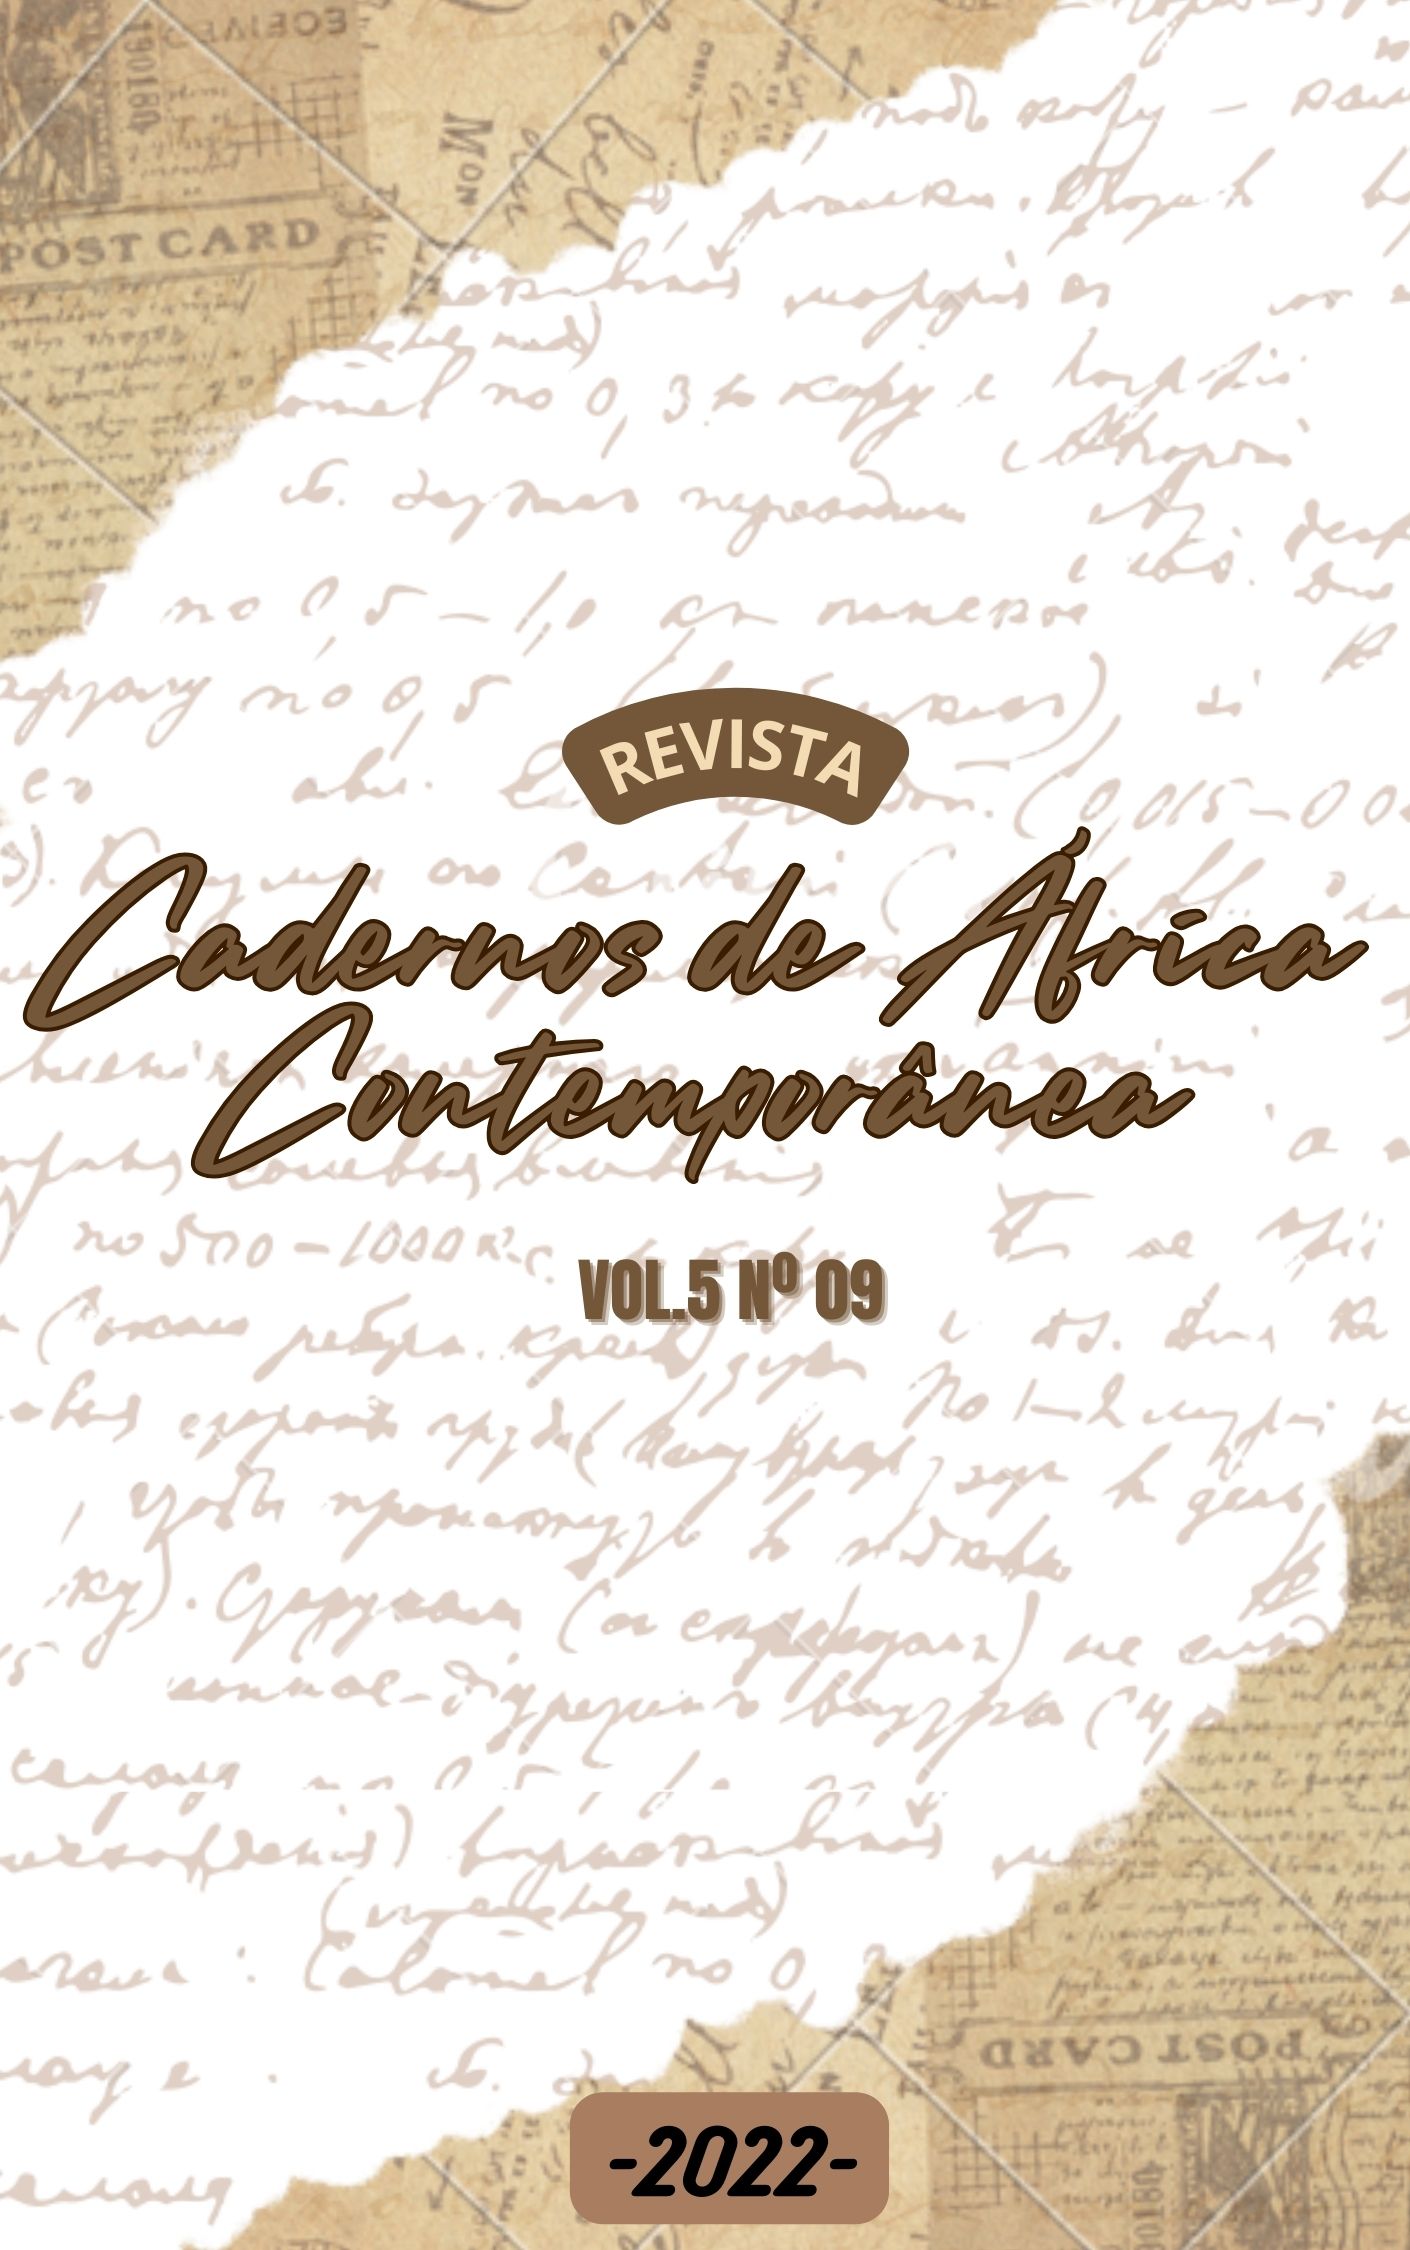 					Visualizar v. 5 n. 09 (2022): Revista Cadernos de África Contemporânea
				